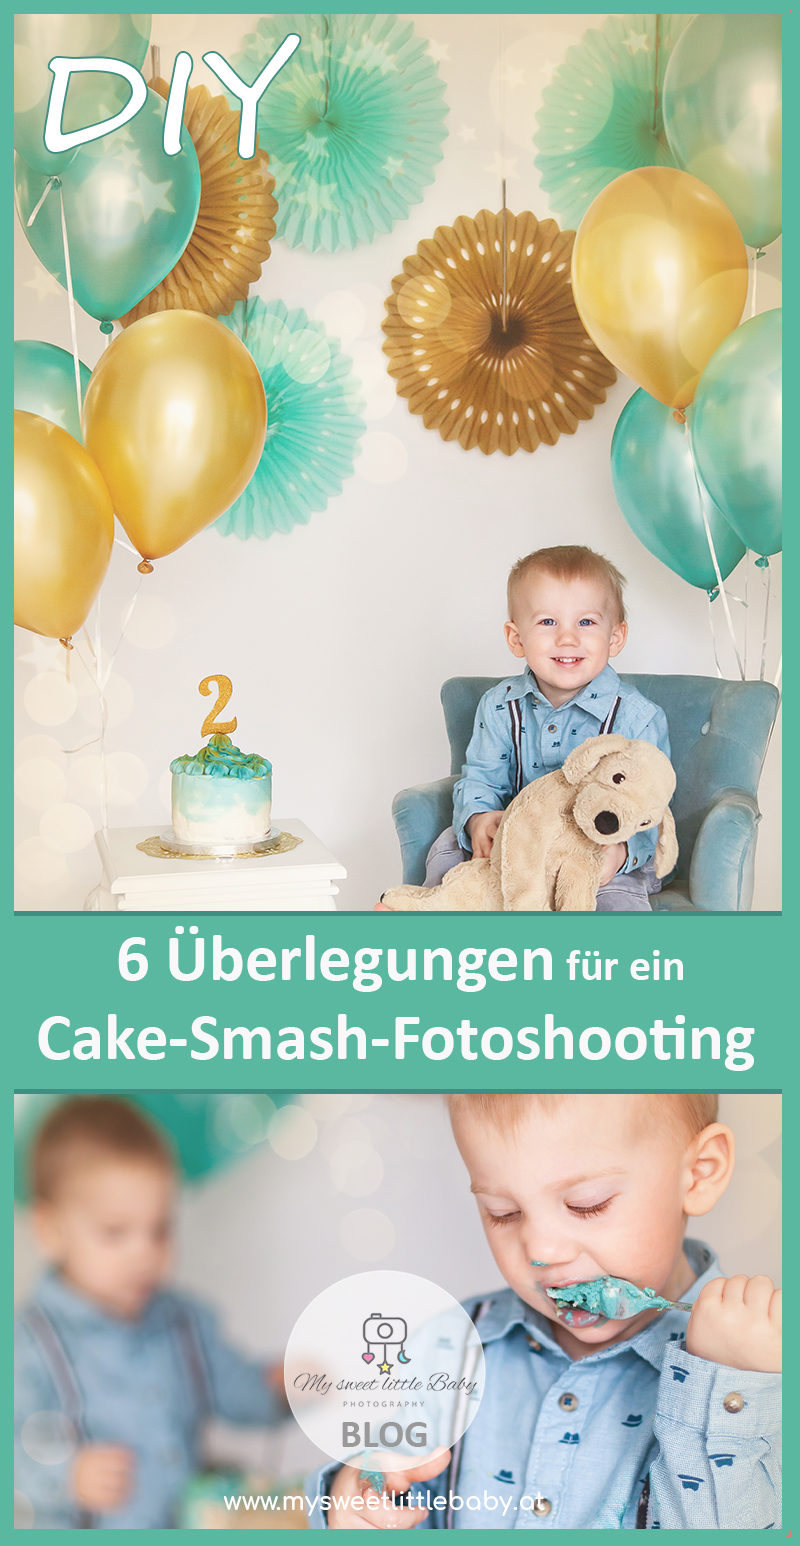 Diese 6 Überlegungen und Vorbereitungen sind für das Cake-Smash-Geburtstags-Shooting hilfreich (HOW-TO-DO) - Mag. Barbara Lachner - Barbara Lachner Blog-DIY Cake-Smash-Shooting, die Zweite. Das Geburtstagsshooting für meine Zwillinge zum 2. Geburtstag. Überlegungen, Vorbereitungen und Fotoshooting